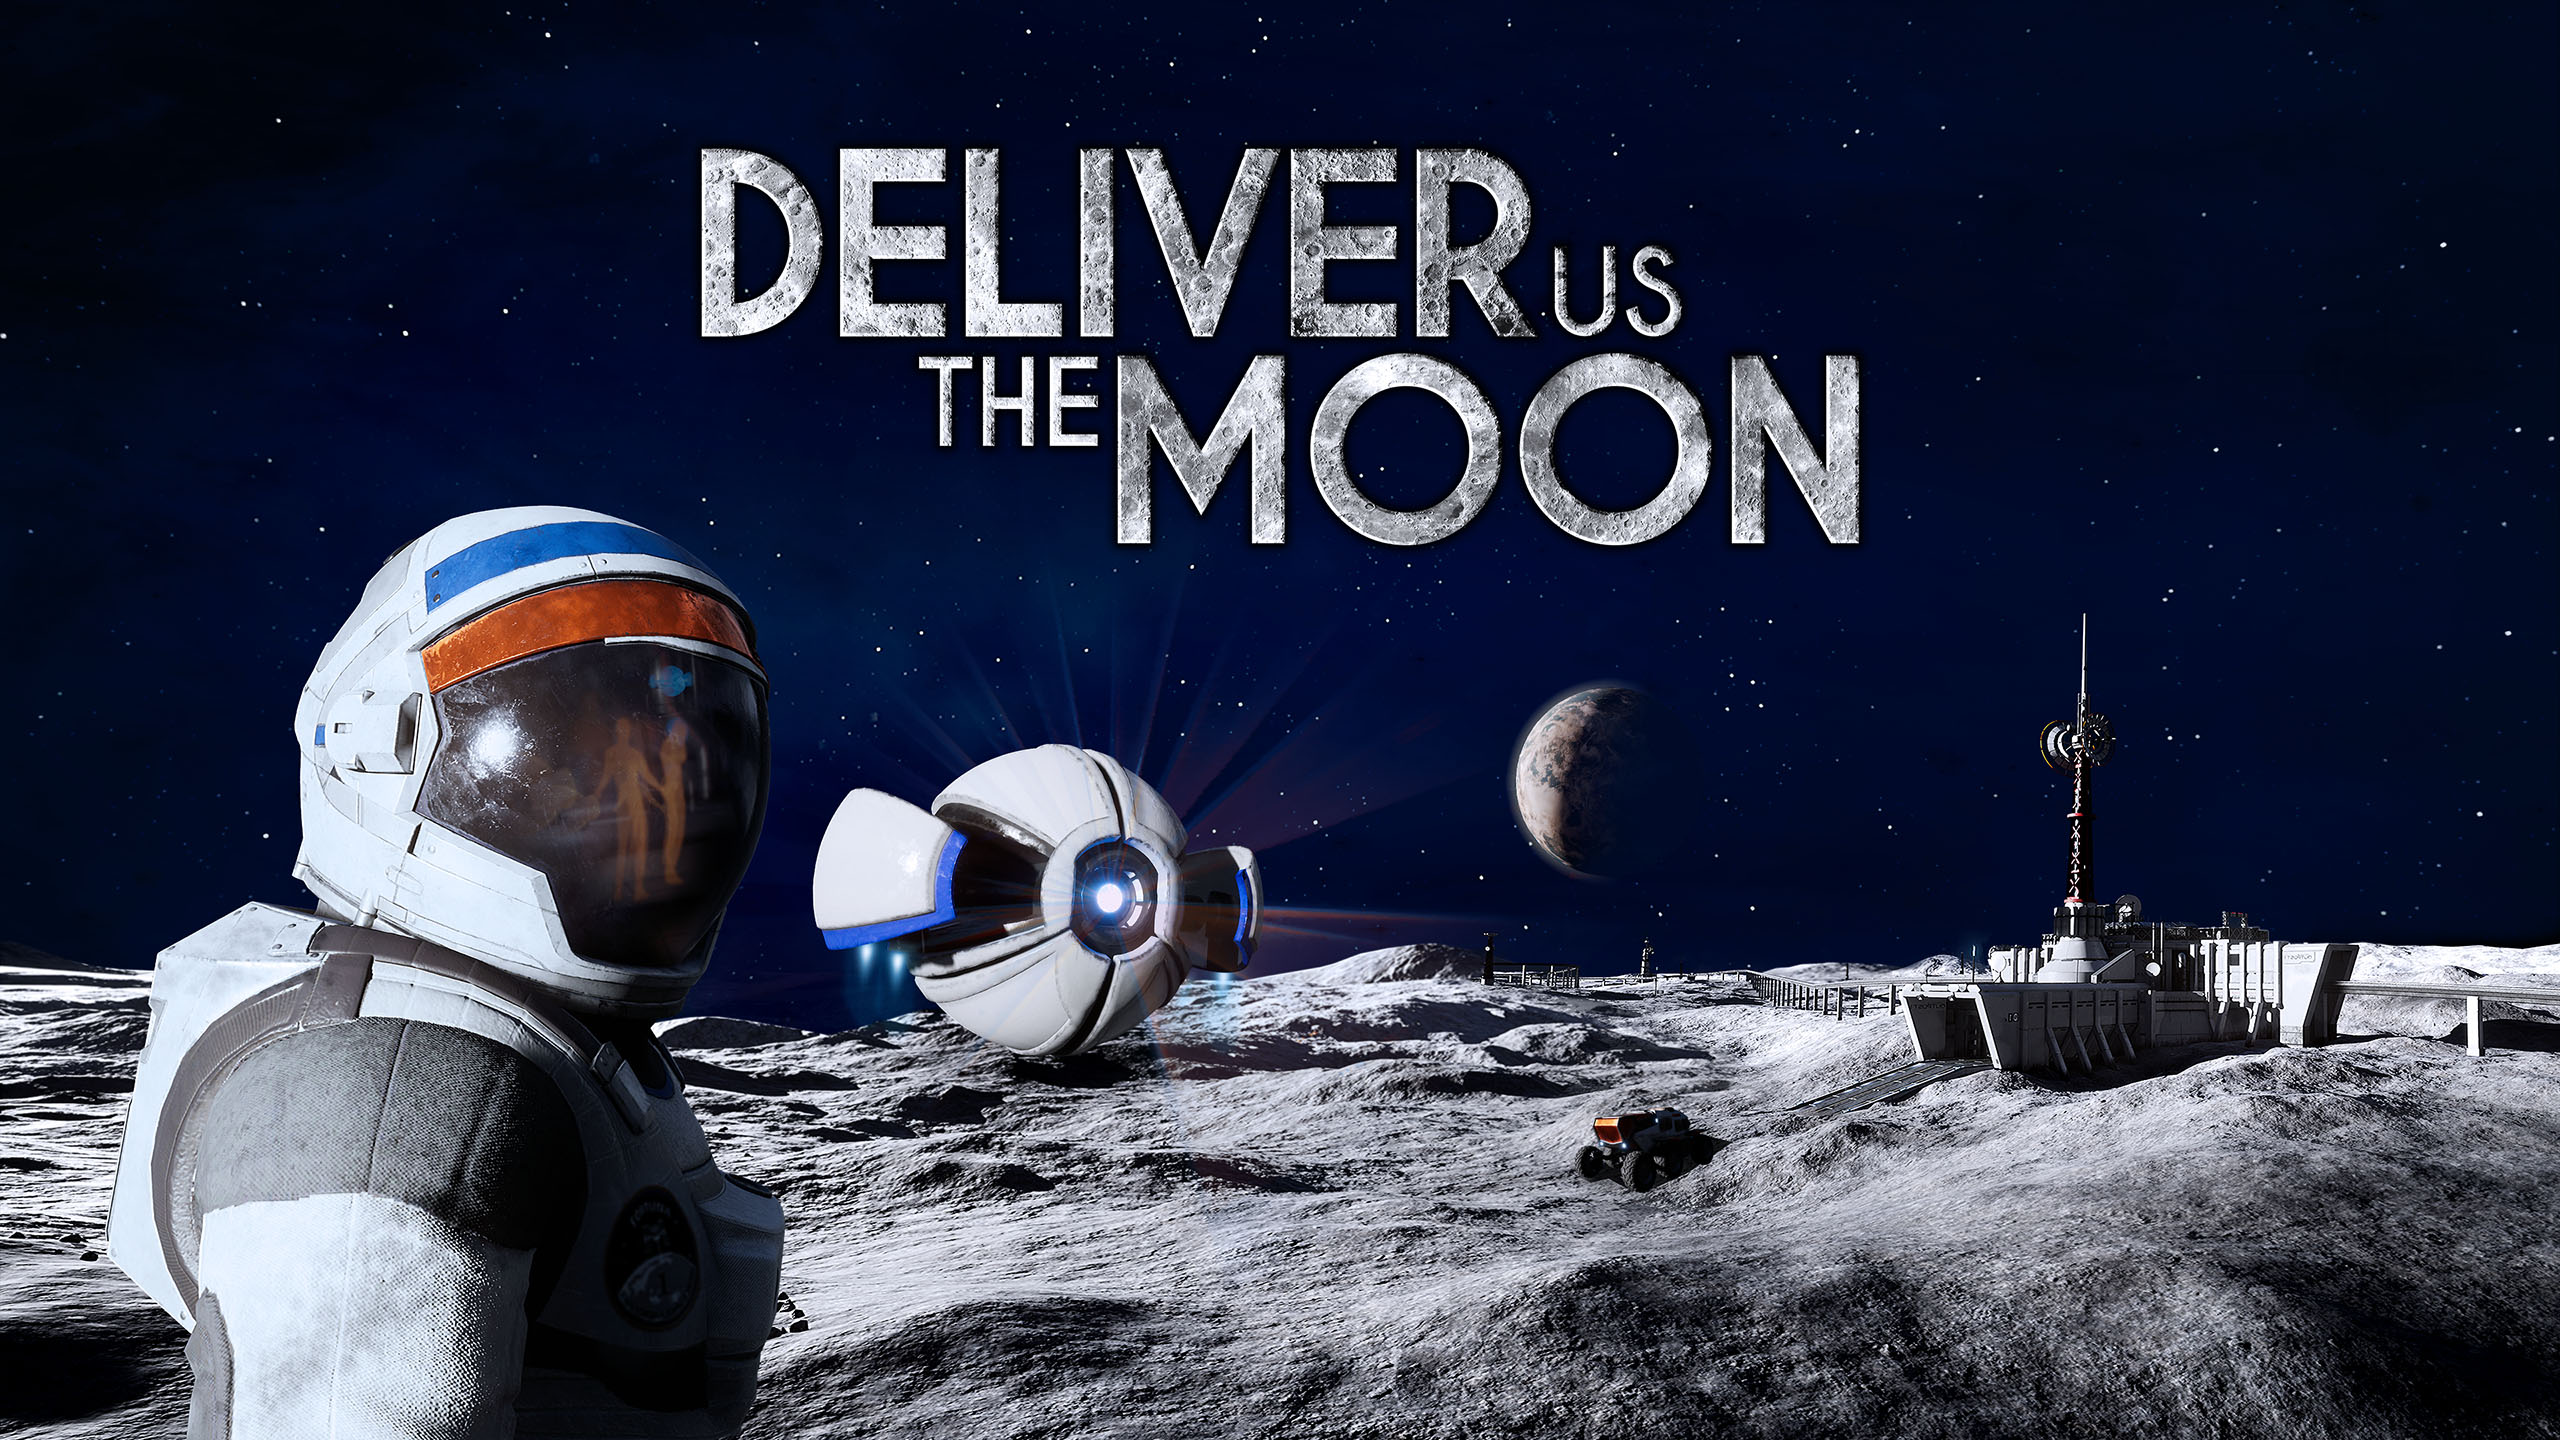 Het actie-avonturenspel Deliver Us the Moon verschijnt dit jaar op Nintendo Switch